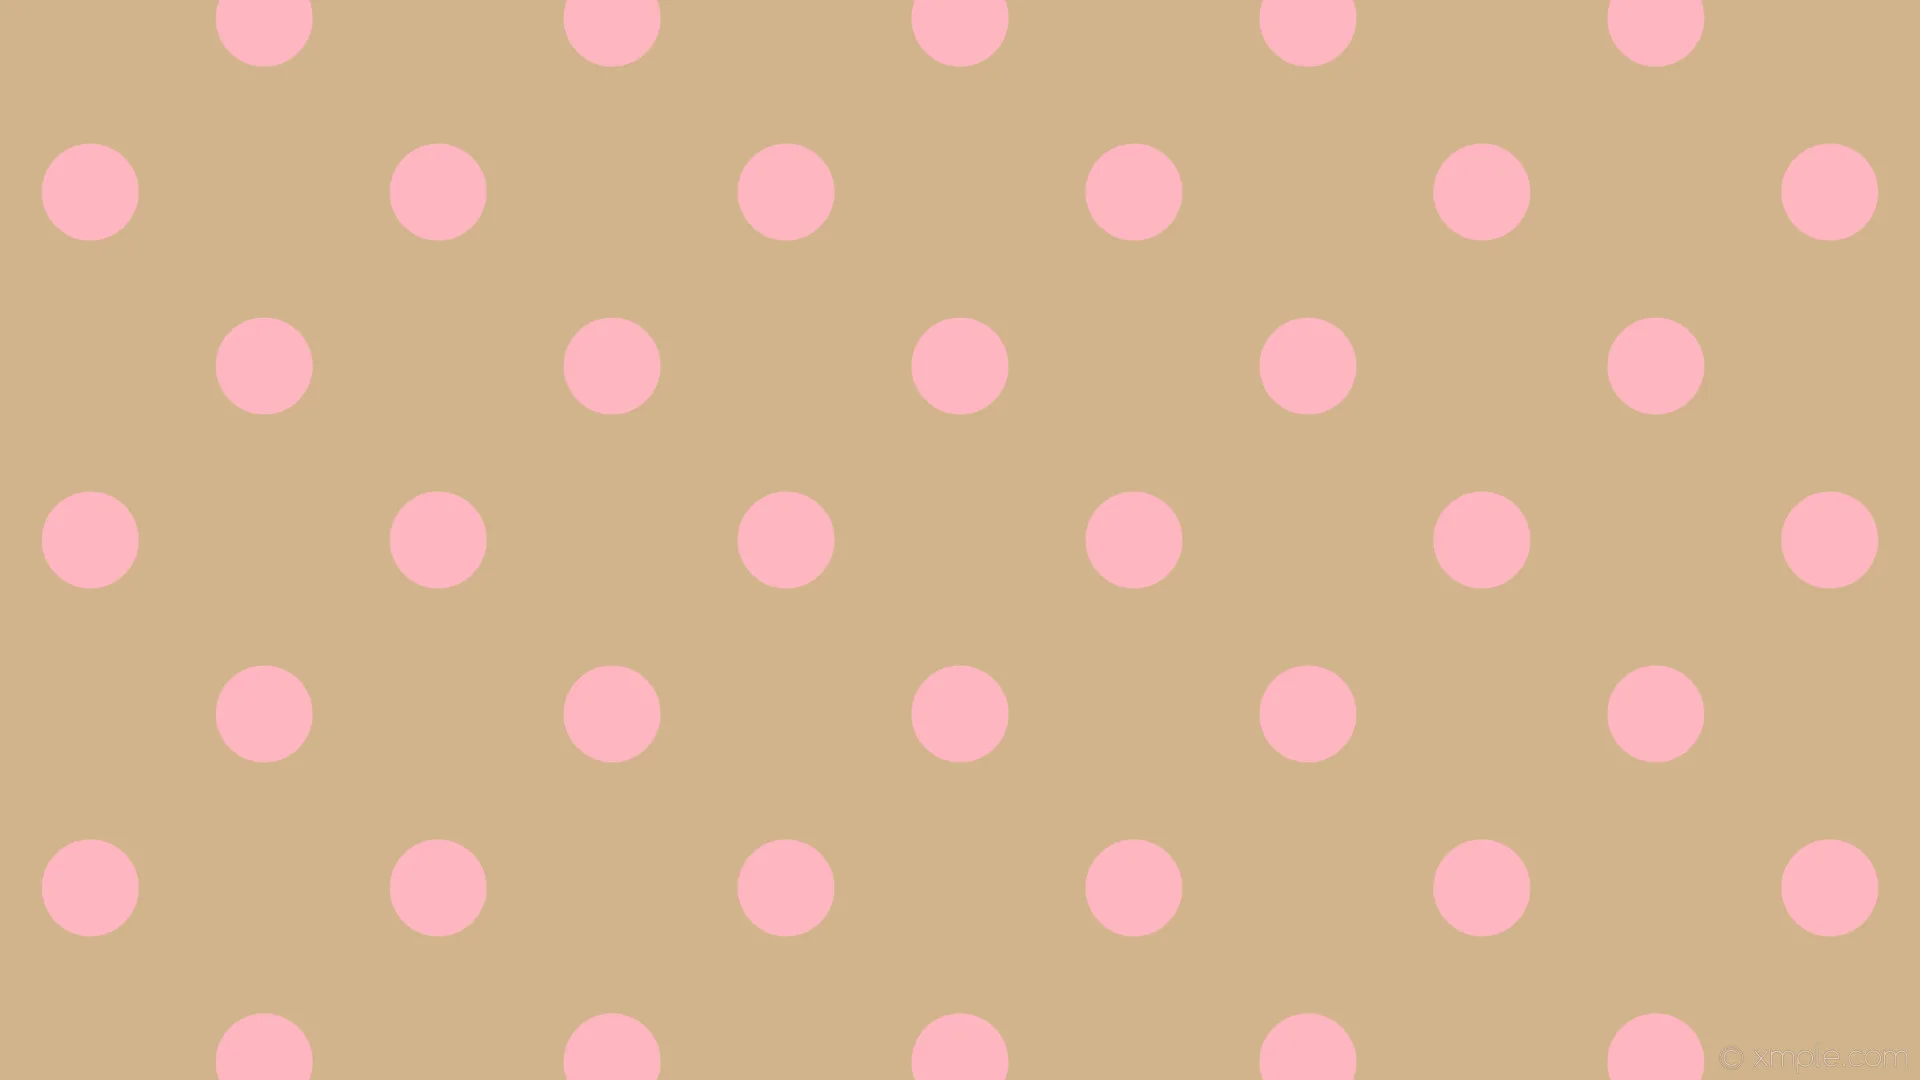 Wallpaper pink dots brown polka spots tan light pink #d2b48c #ffb6c1 315 97px